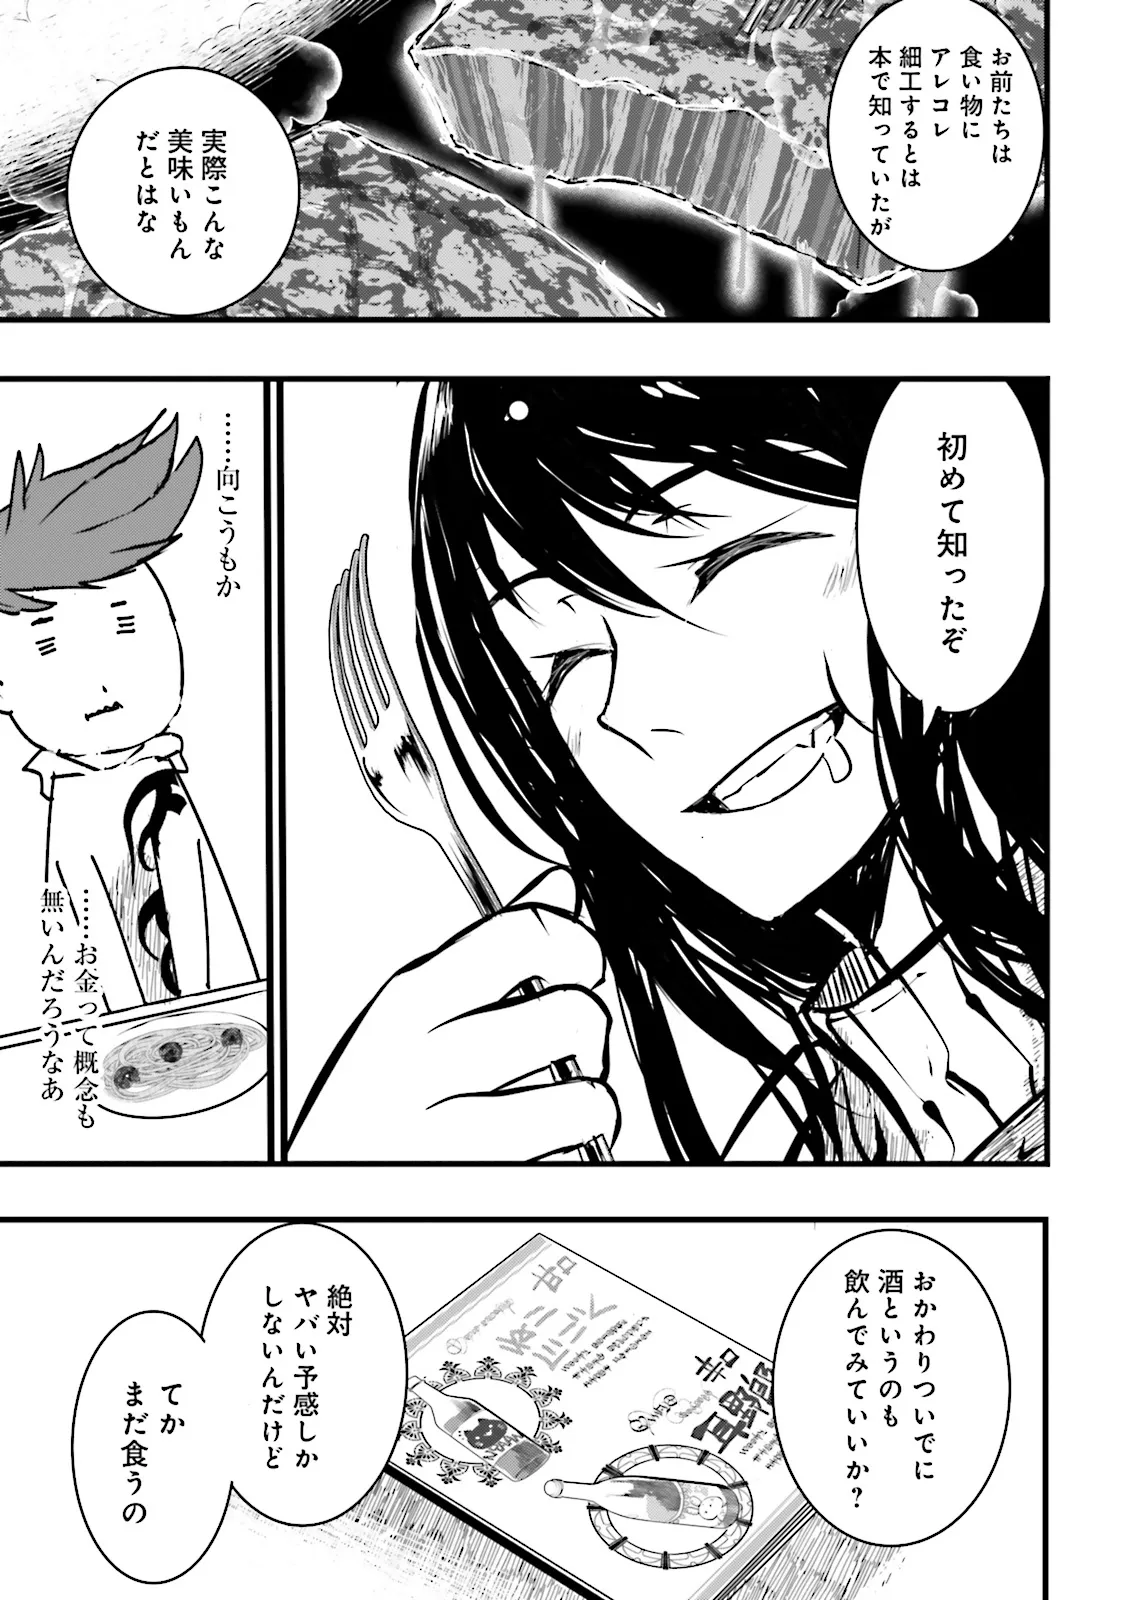 Sukiru Ga Nakereba Level wo Ageru ~ 99 Ga Kansuto No Sekai De Reberu 800 Man Kara Sutato ~ - Chapter 38.2 - Page 7